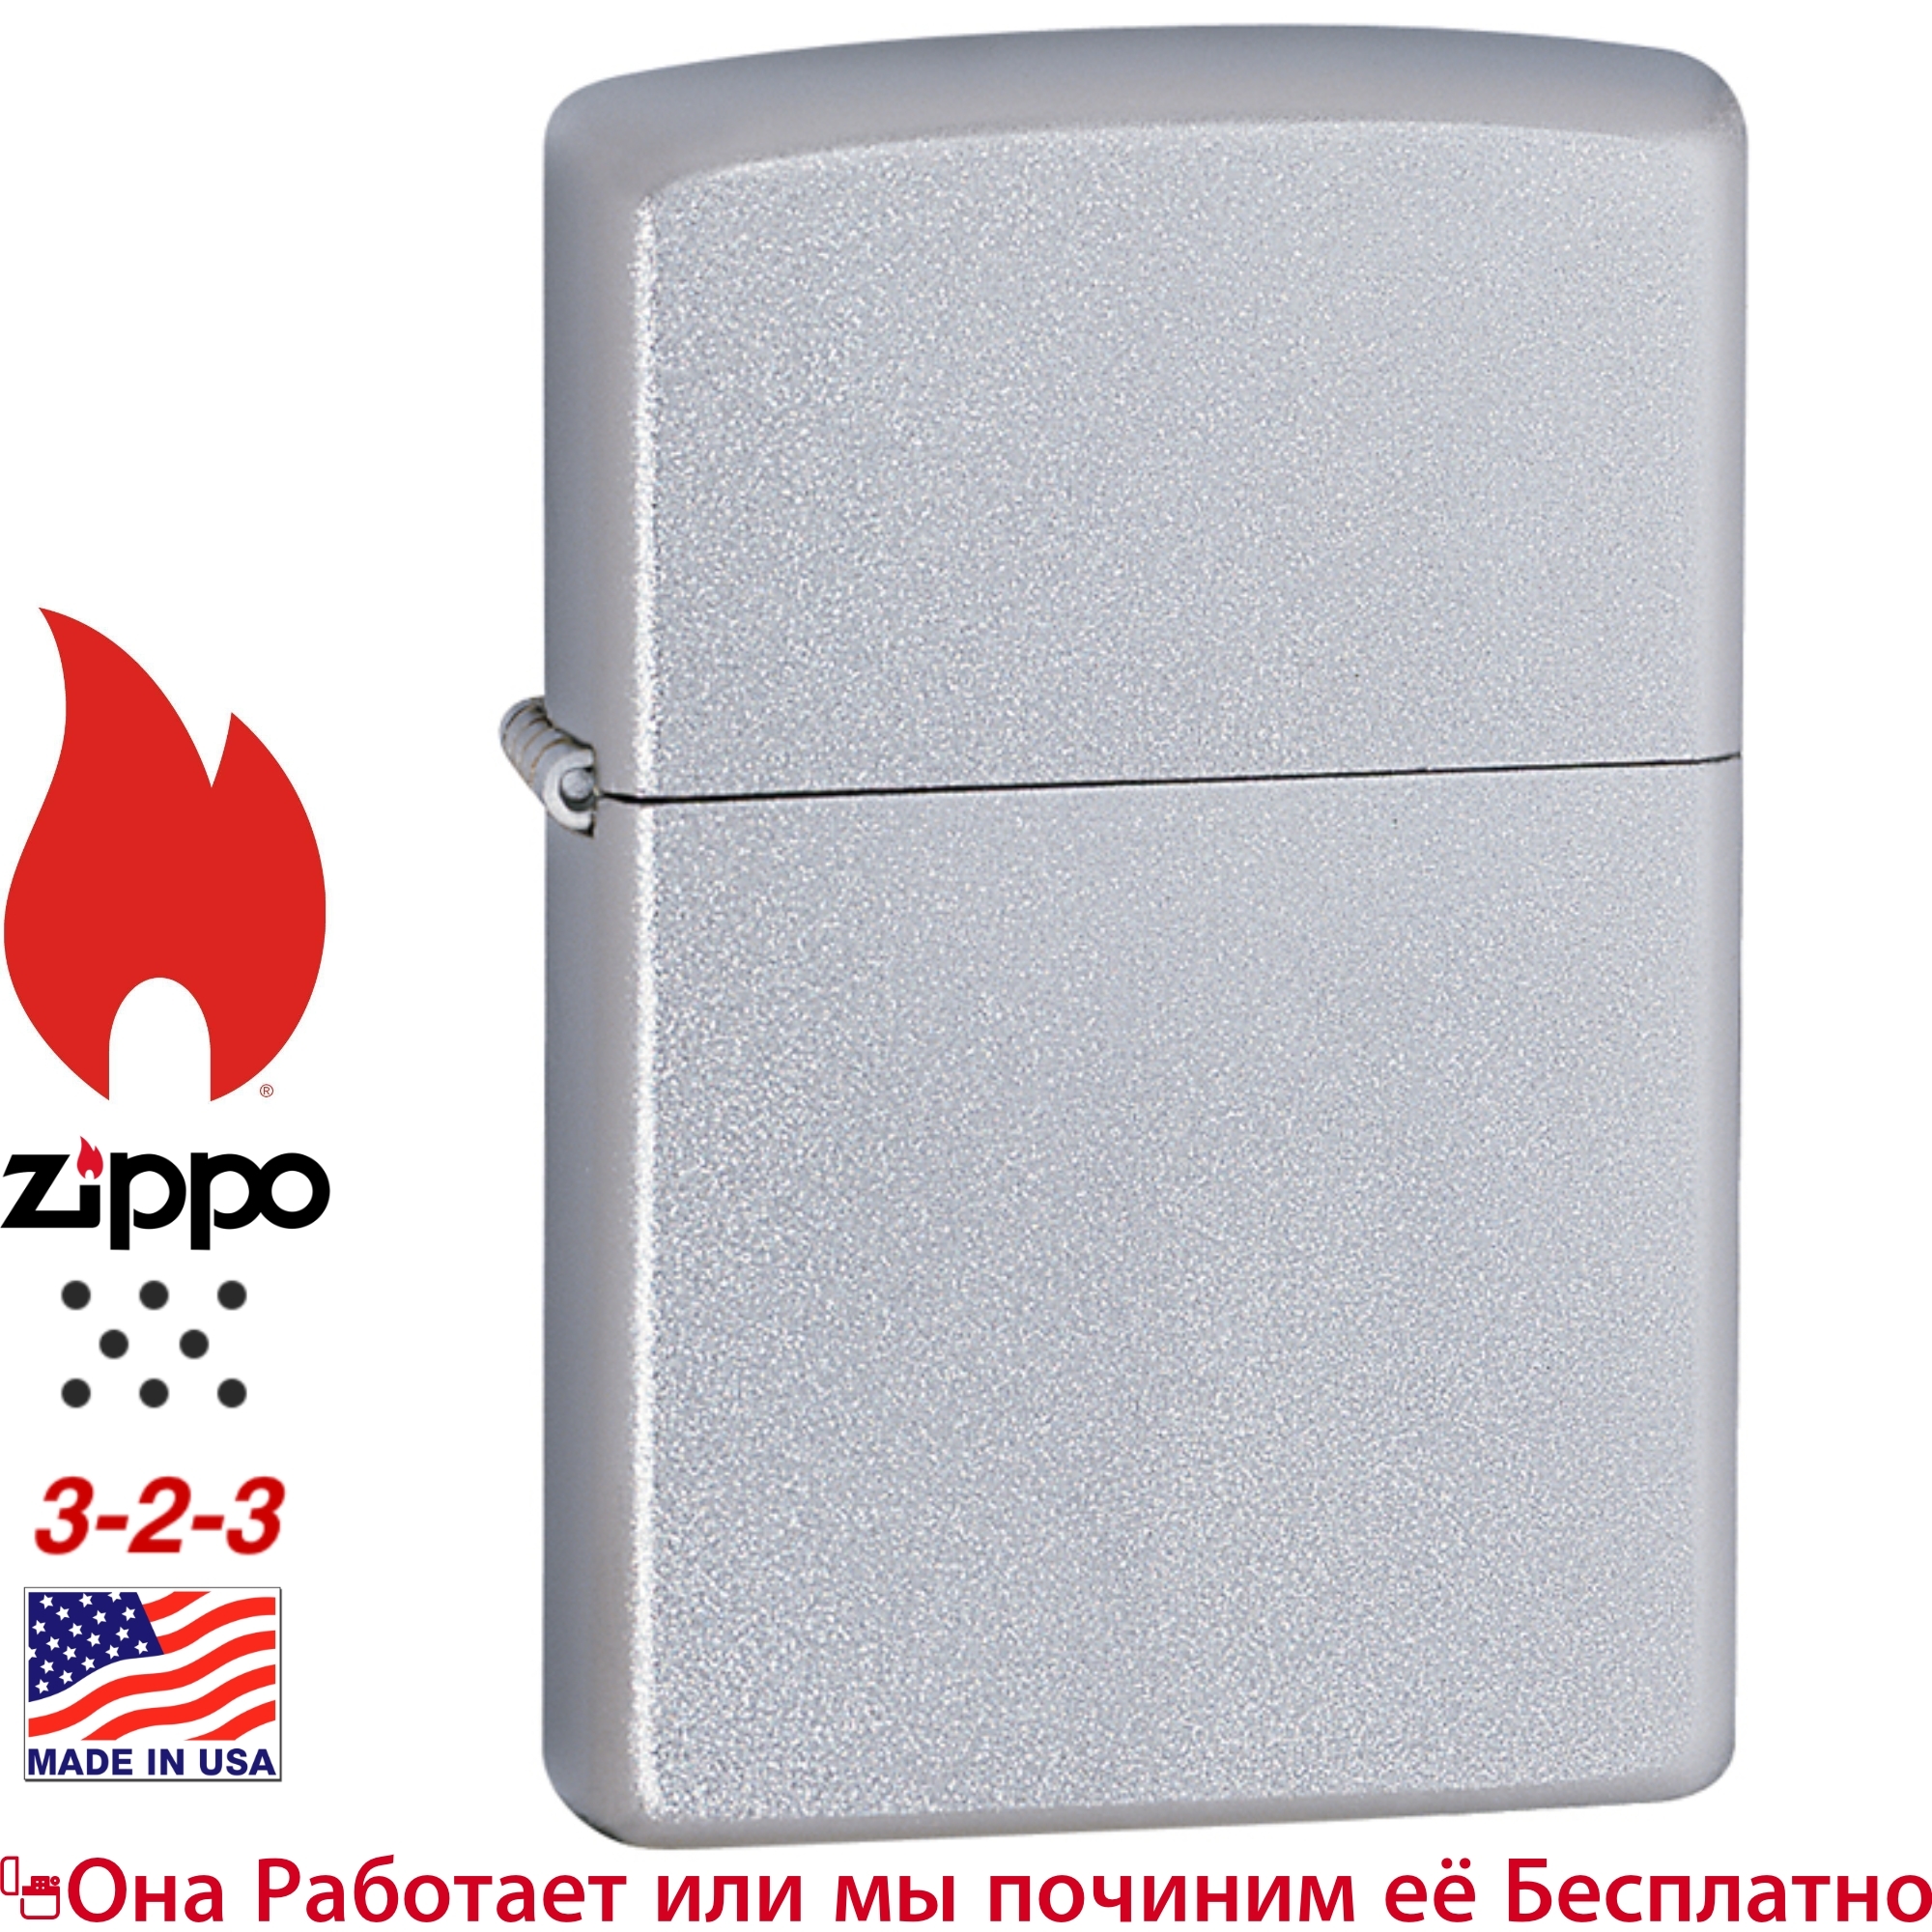 Зажигалка ZIPPO Classic-Покрытие Satin Chrome ОРИГИНАЛ-Матовая  .